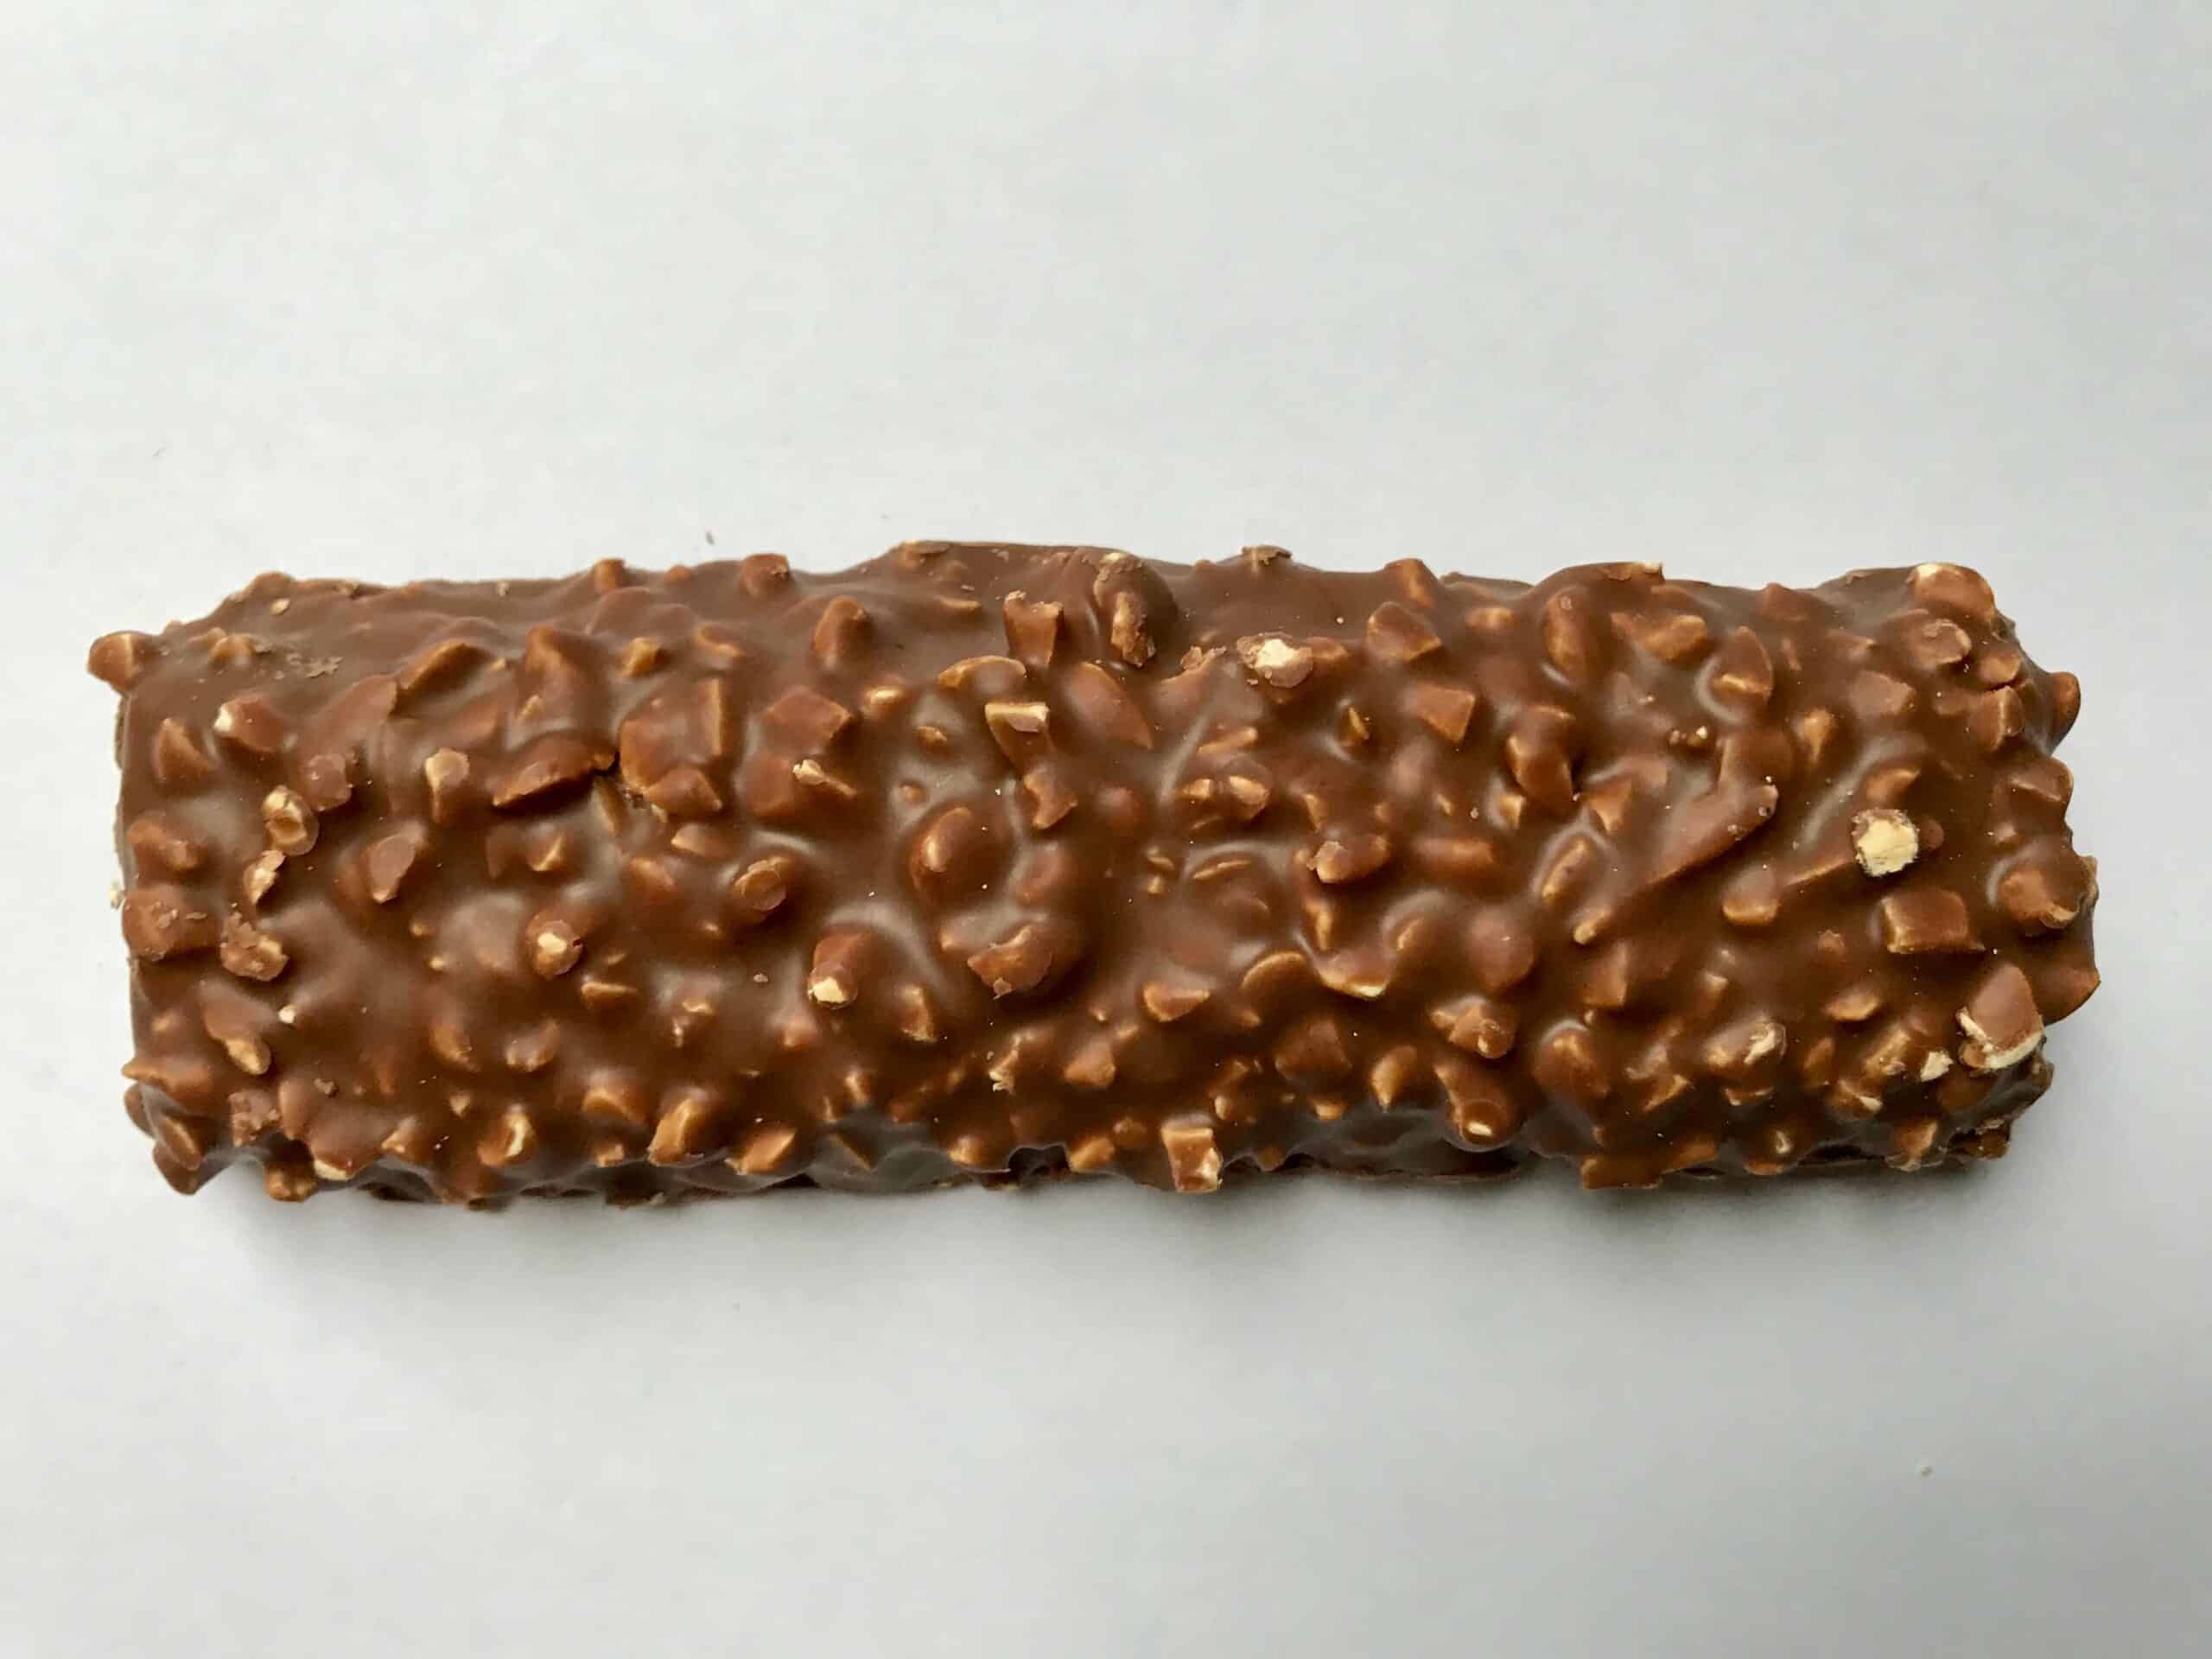 ESN Tasty Bar Chocolate Peanut Butter and Caramel ausgepackt